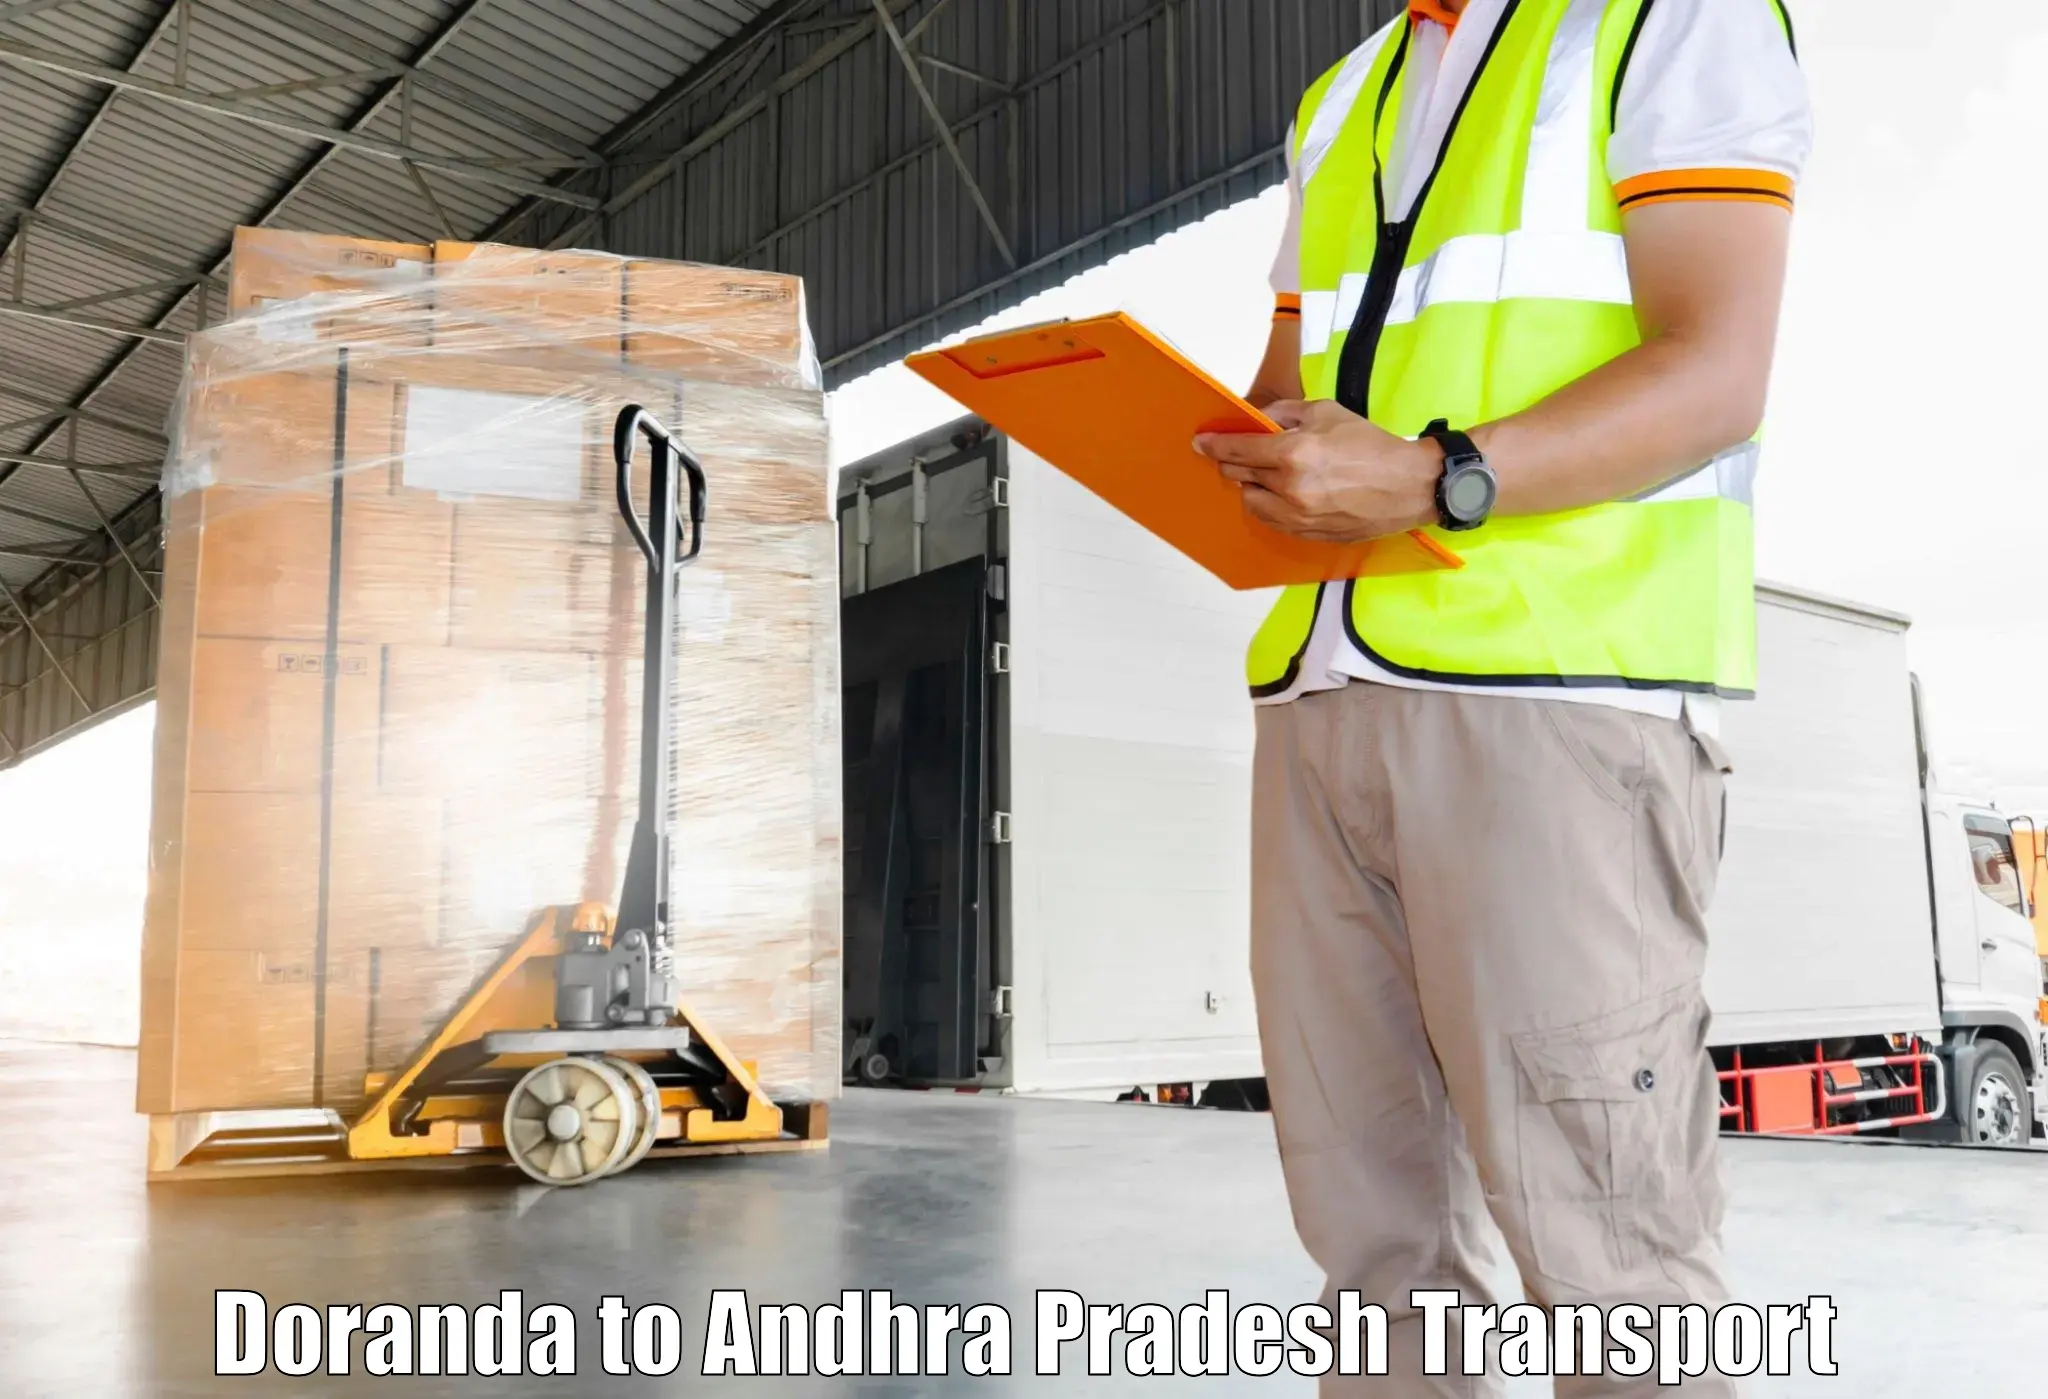 International cargo transportation services Doranda to Bhimadole